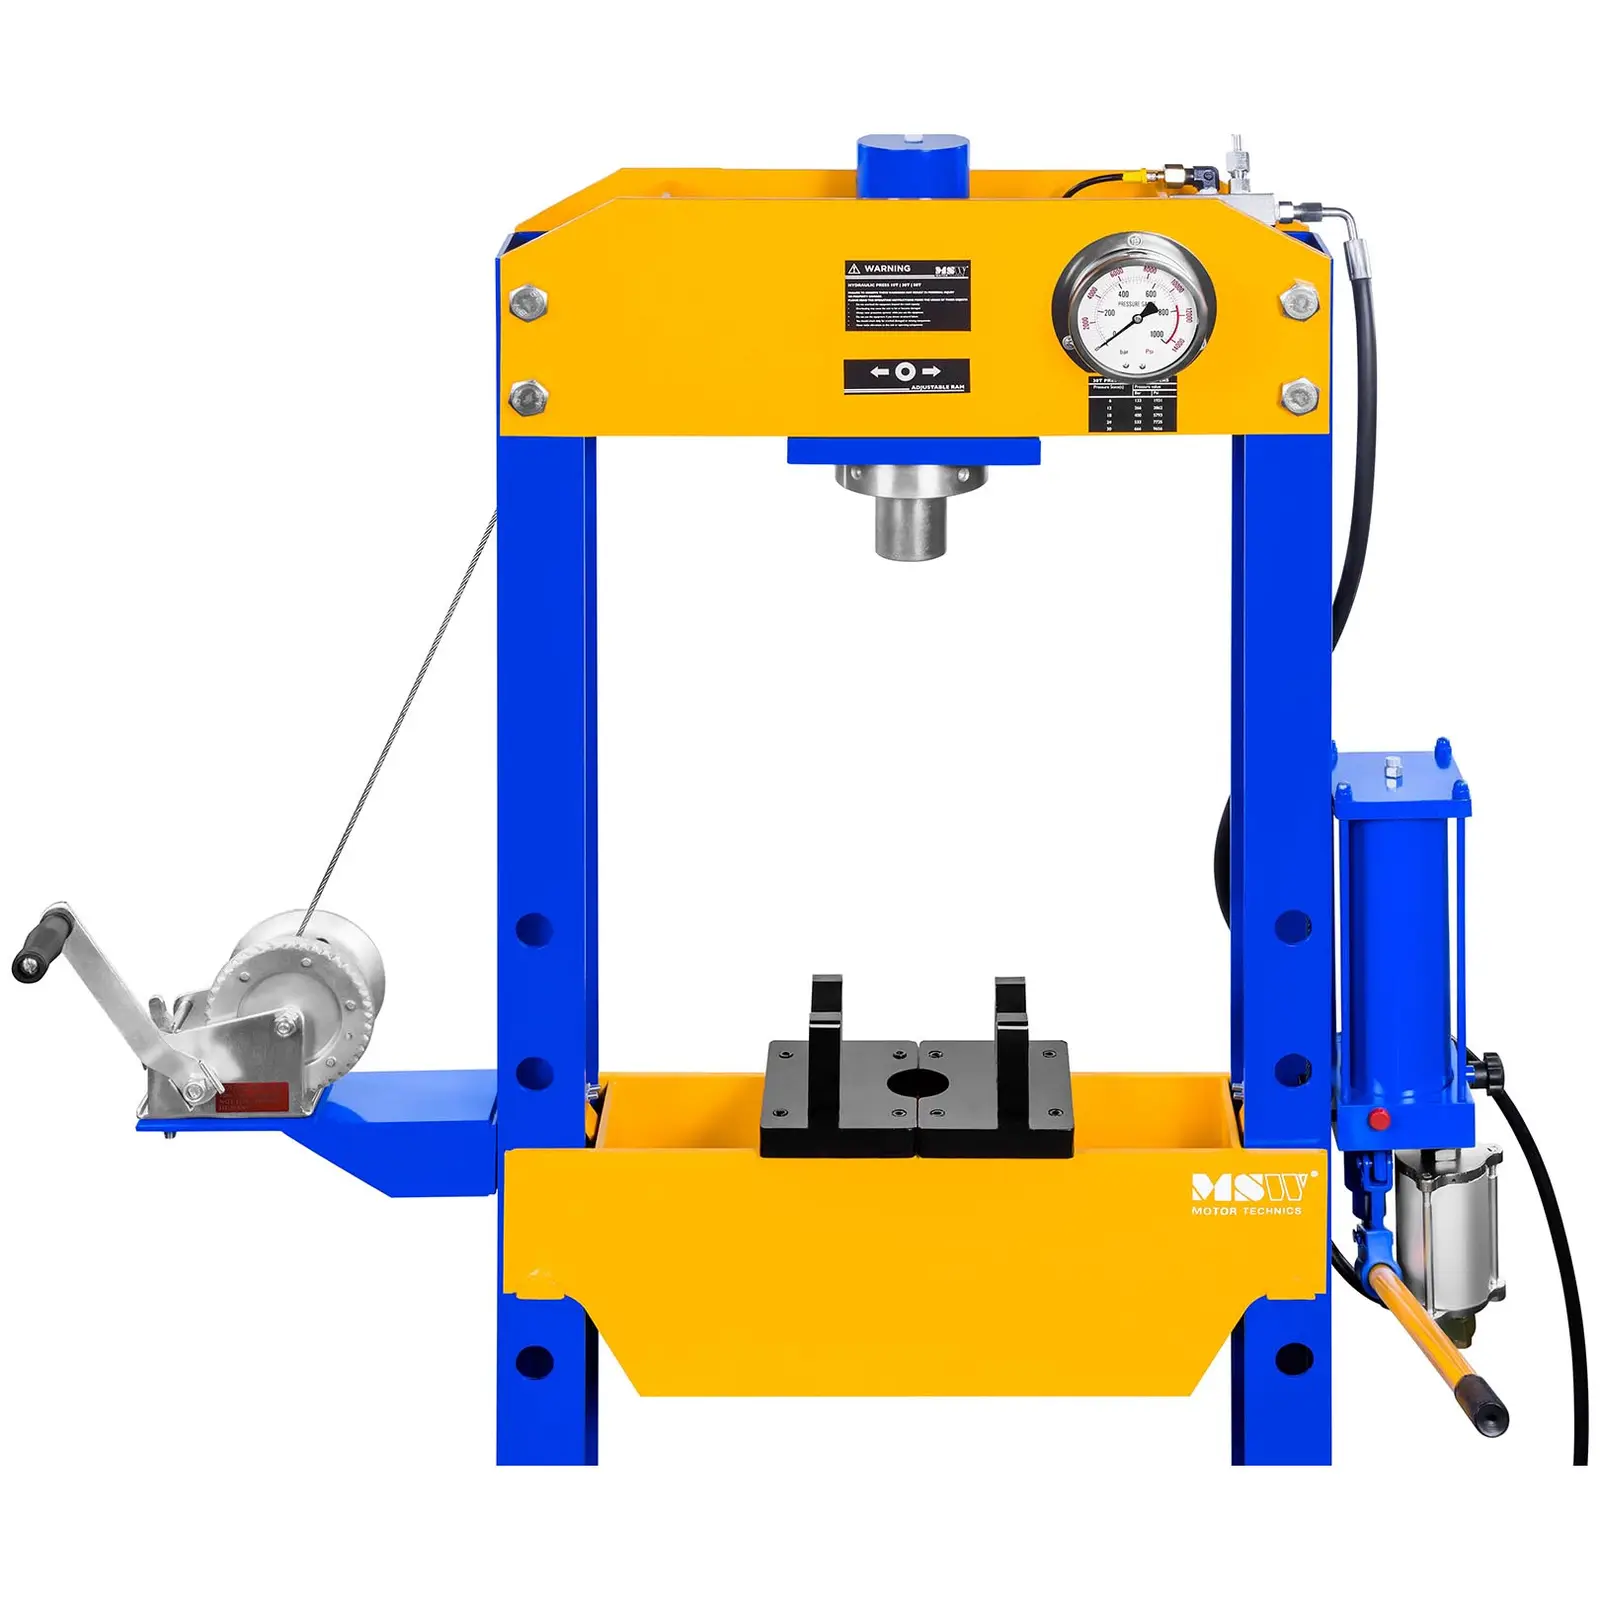 Werkstattpresse hydropneumatisch - 30 t Pressdruck